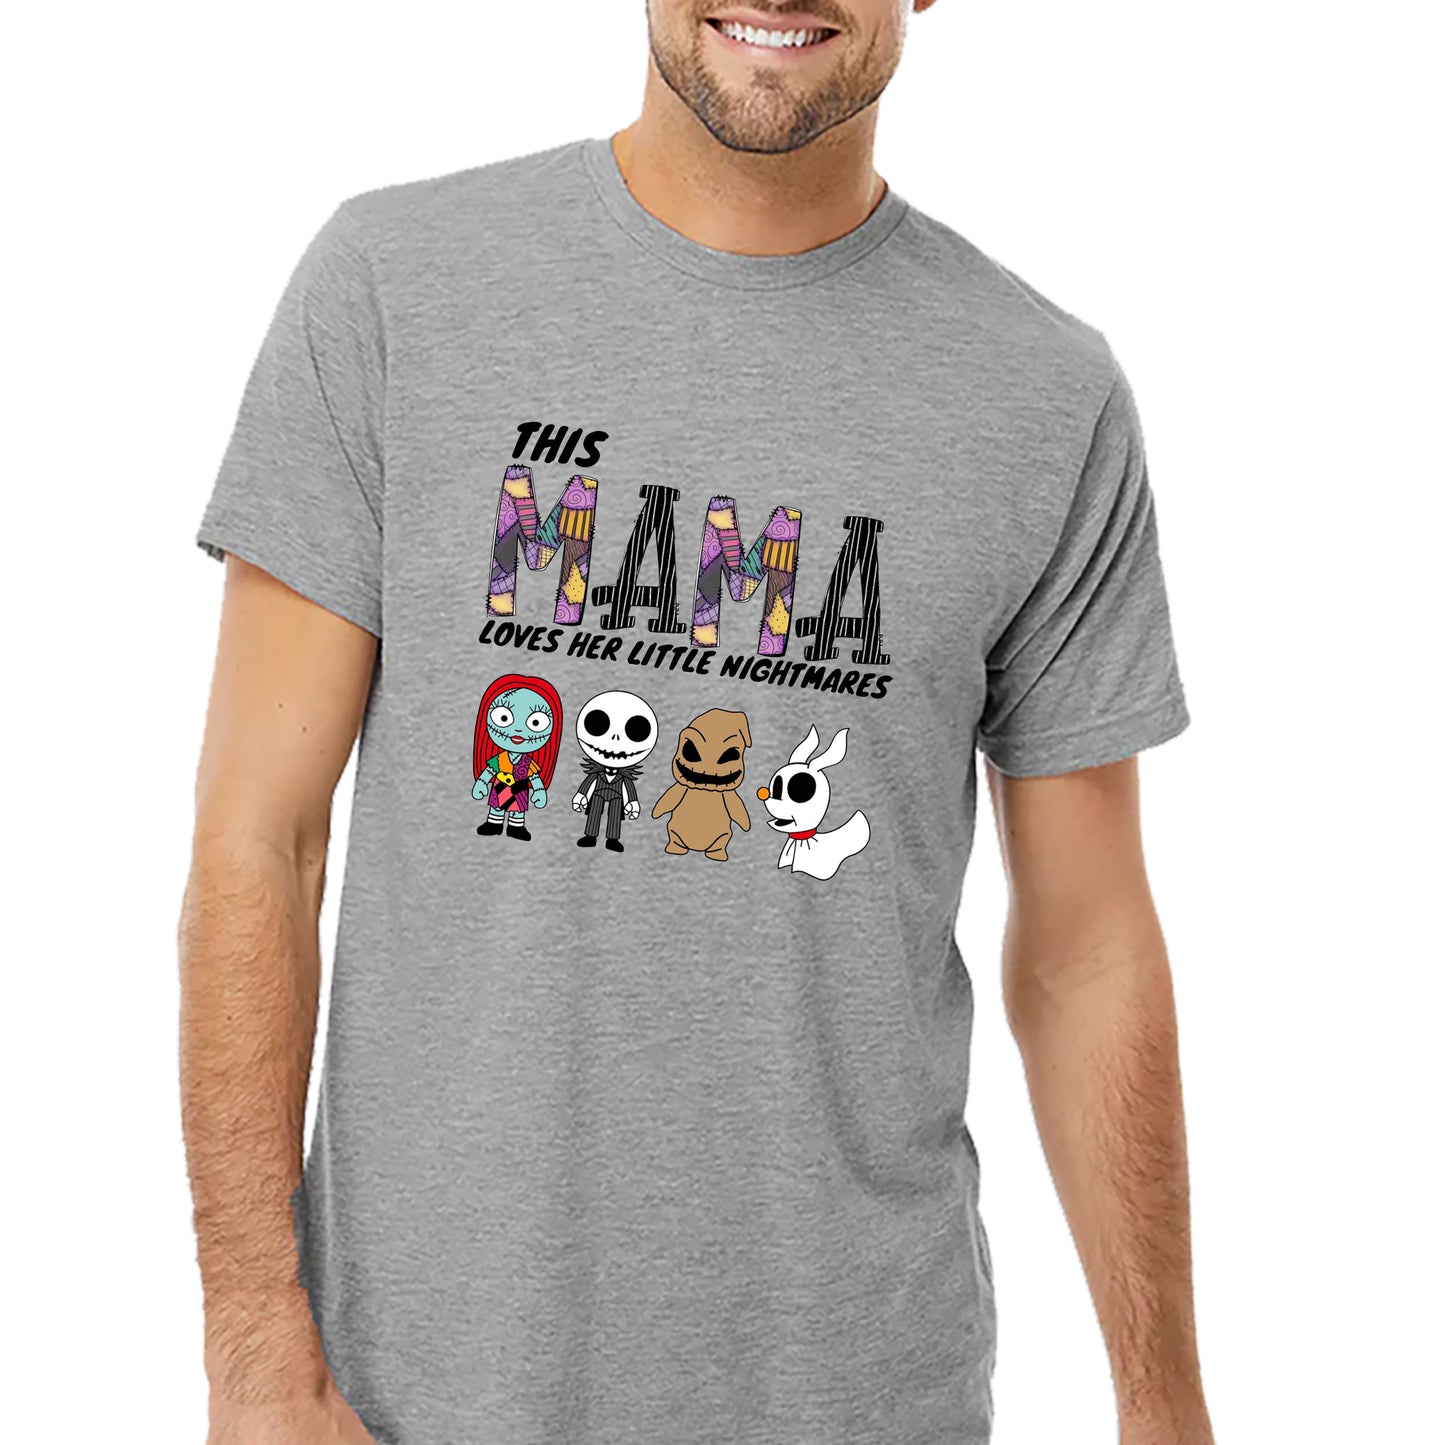 This Mama T-shirt